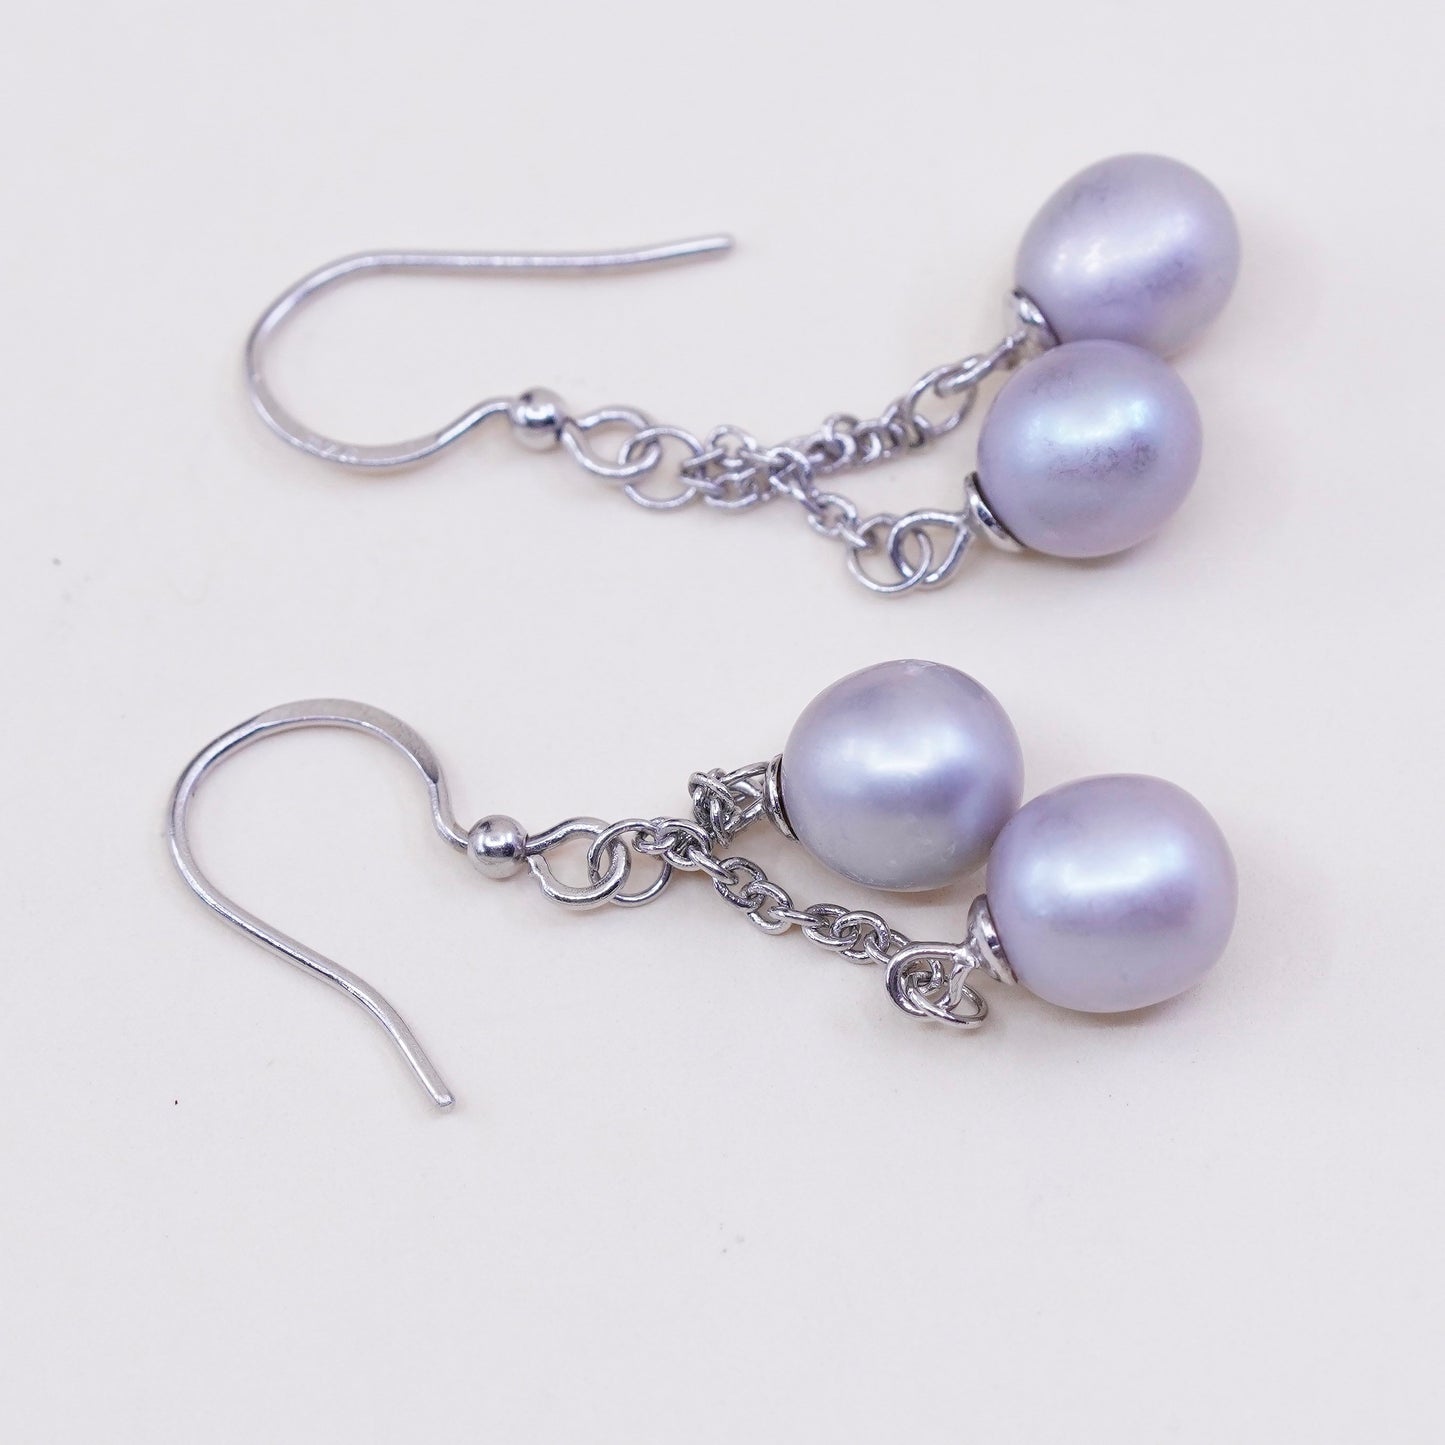 Vintage sterling 925 silver handmade earrings with pearl dangles